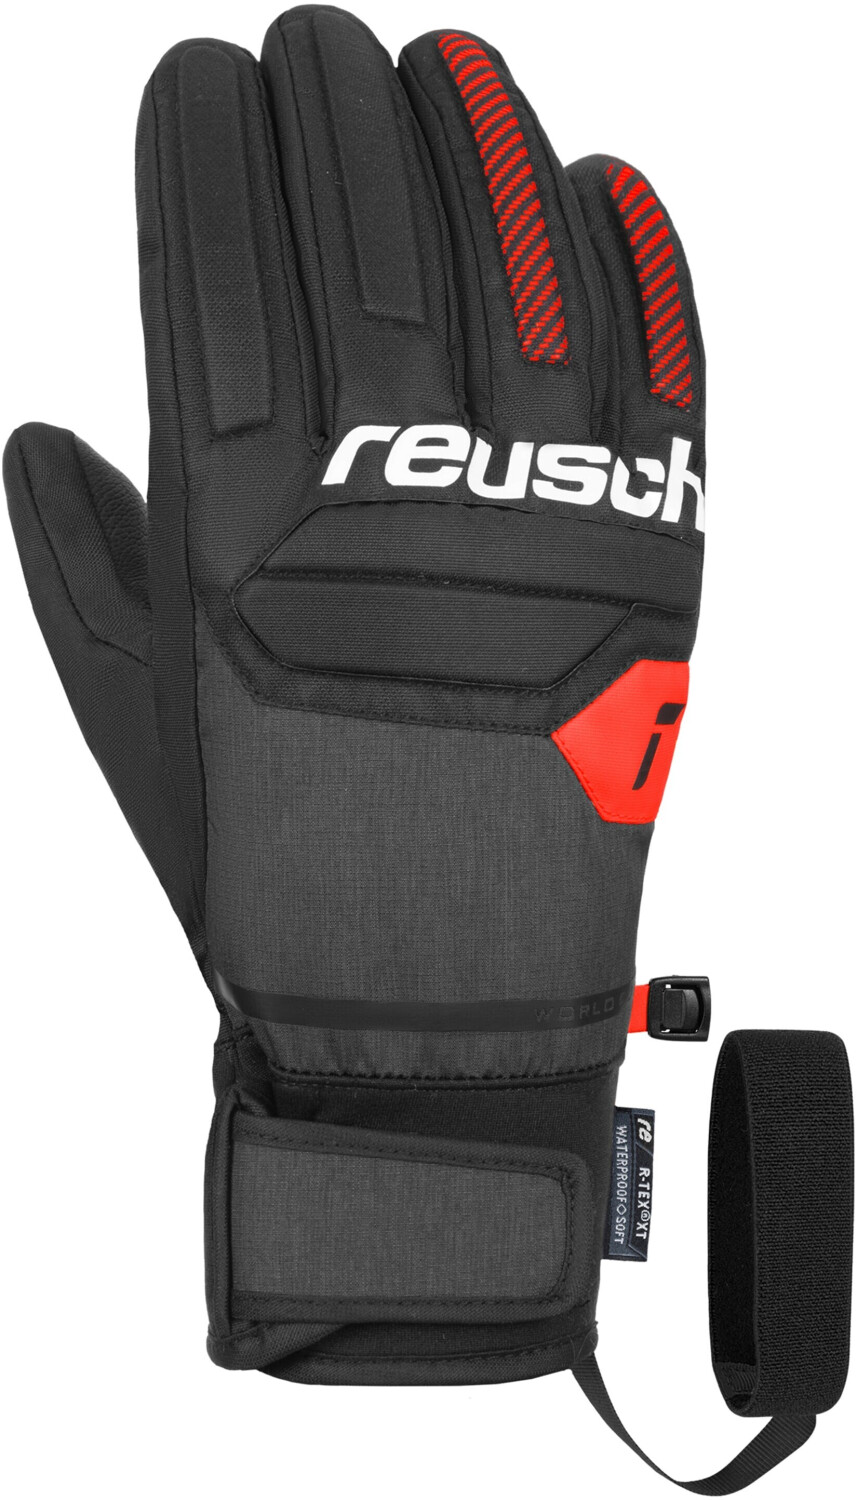 Reusch Warrior R-tex XT black/white/fluo bei ab red 55,23 € | Preisvergleich (6301250)